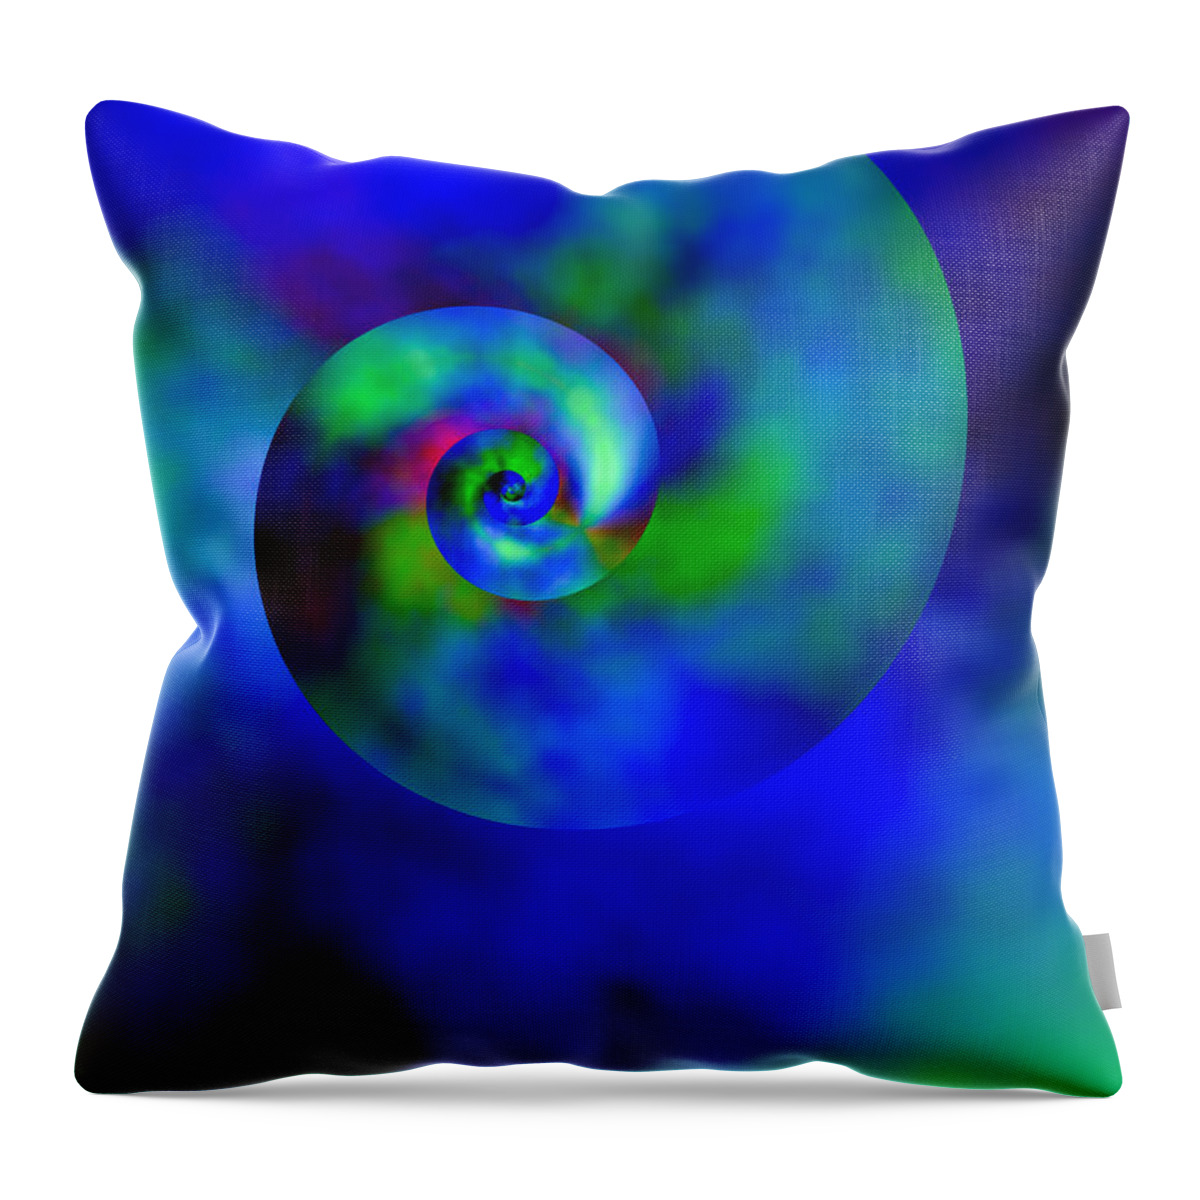 Nautilus Throw Pillow featuring the digital art Celestial Nautilus by Hakon Soreide